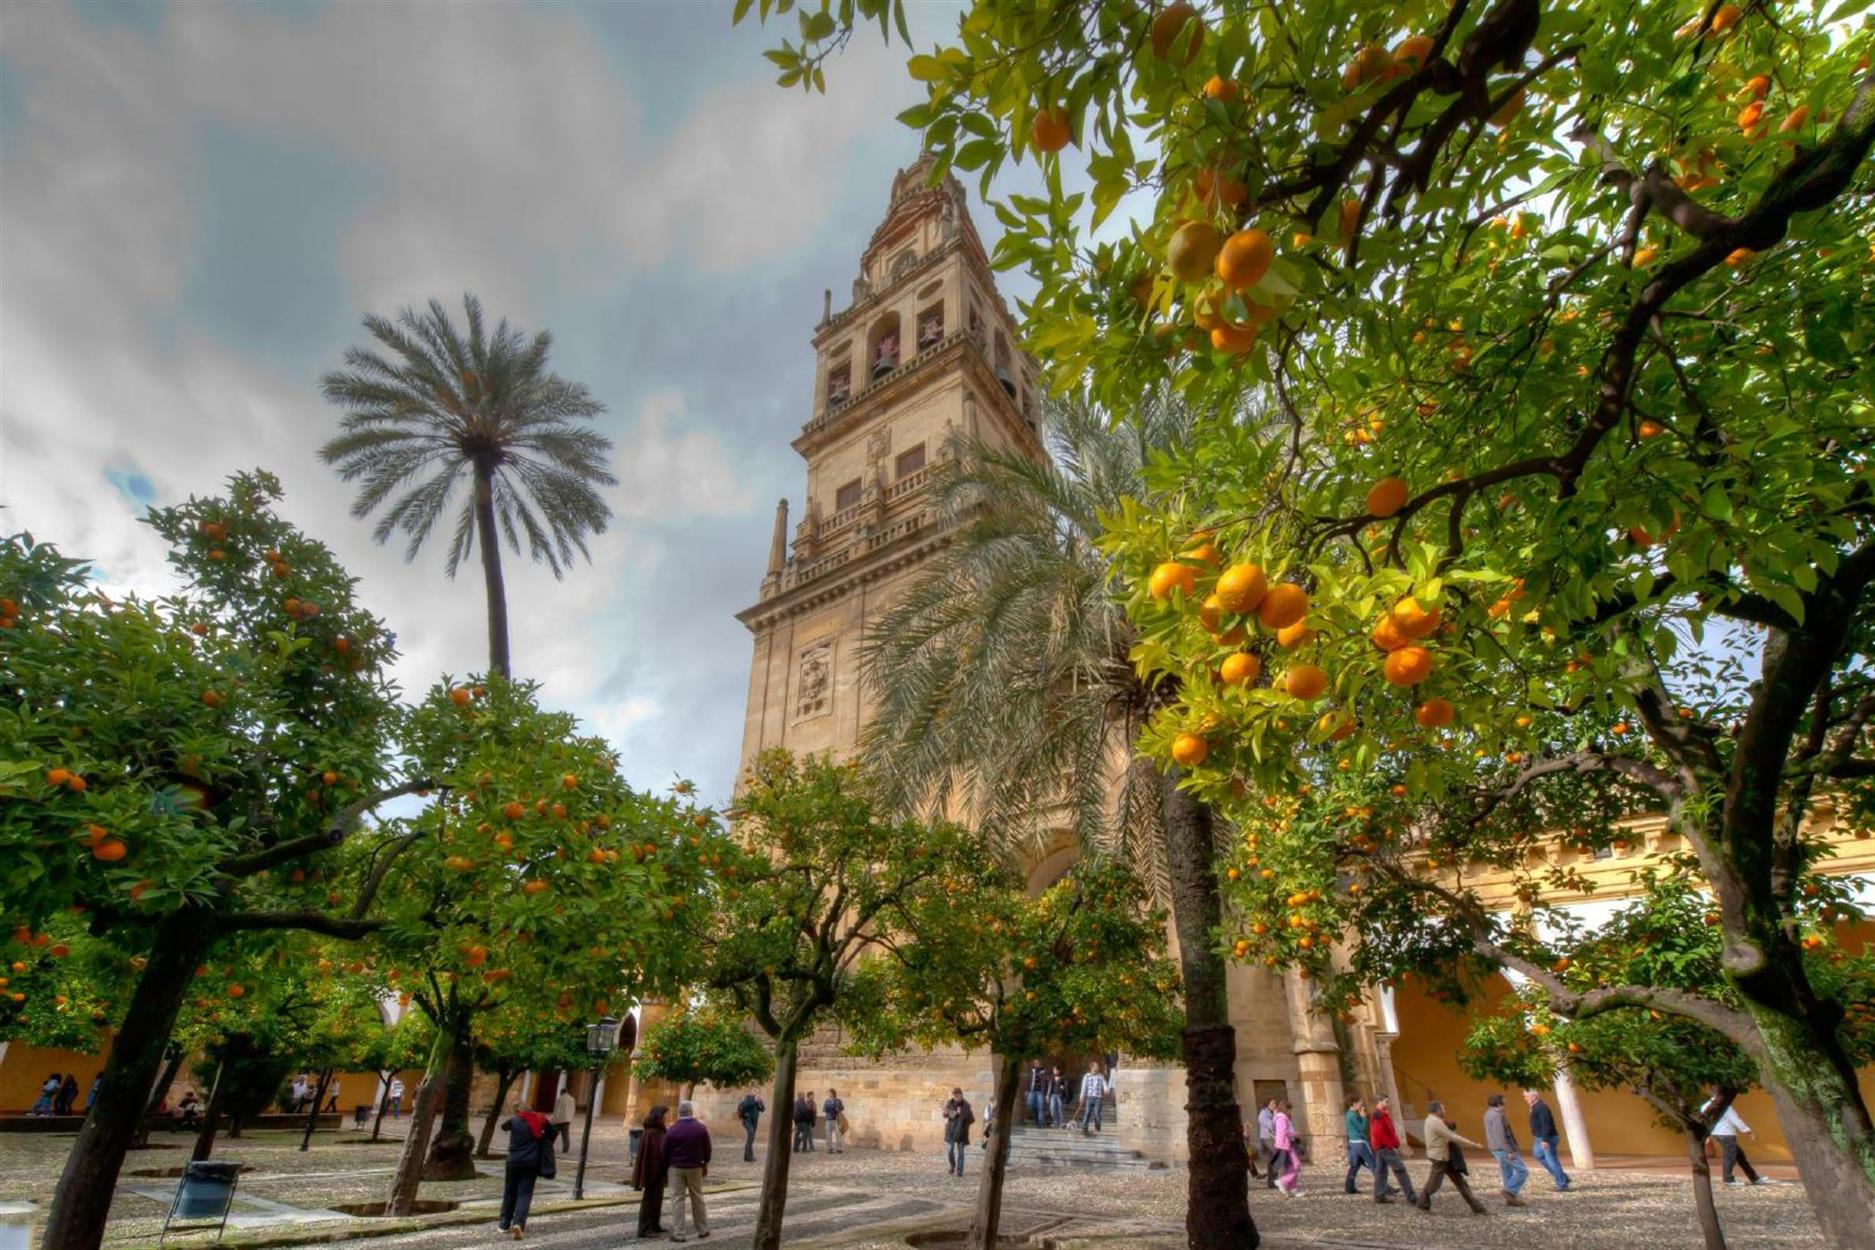 Wir besuchten die Mezquita de Córdoba, die Hauptmoschee von Cordoba aus der maurischen Epoche von Andalusien. Die Moschee wurde nach dem Niedergang der Kalifen von Cordoba in die heutige Kirche "Maria Empfängnis" umgebaut.